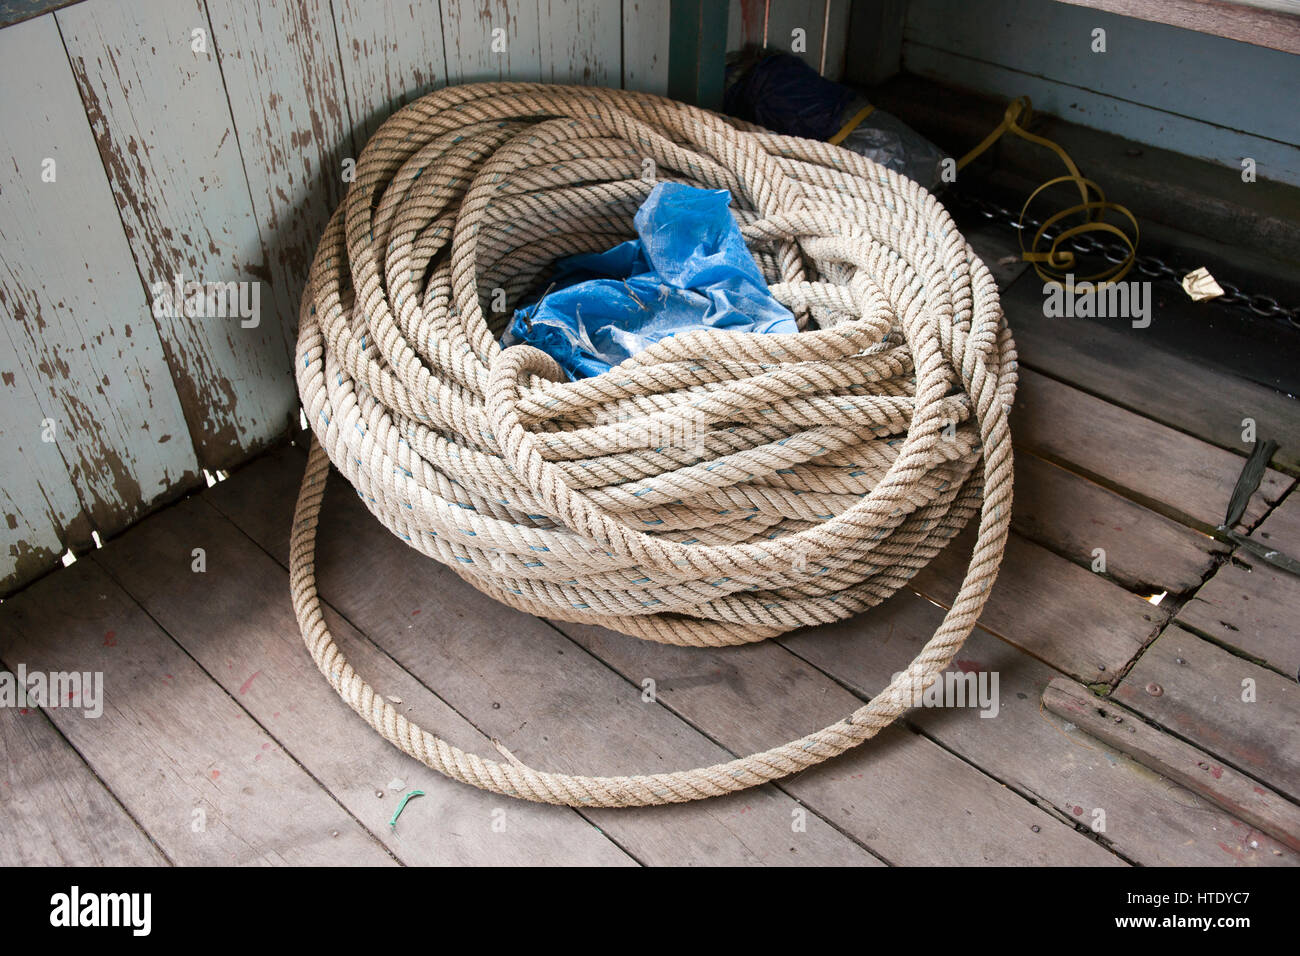 Weißen Seil an der Ecke eines Bootes, die darauf warten, genutzt werden, um das Boot zu befestigen, wenn es angedockt wird. Stockfoto